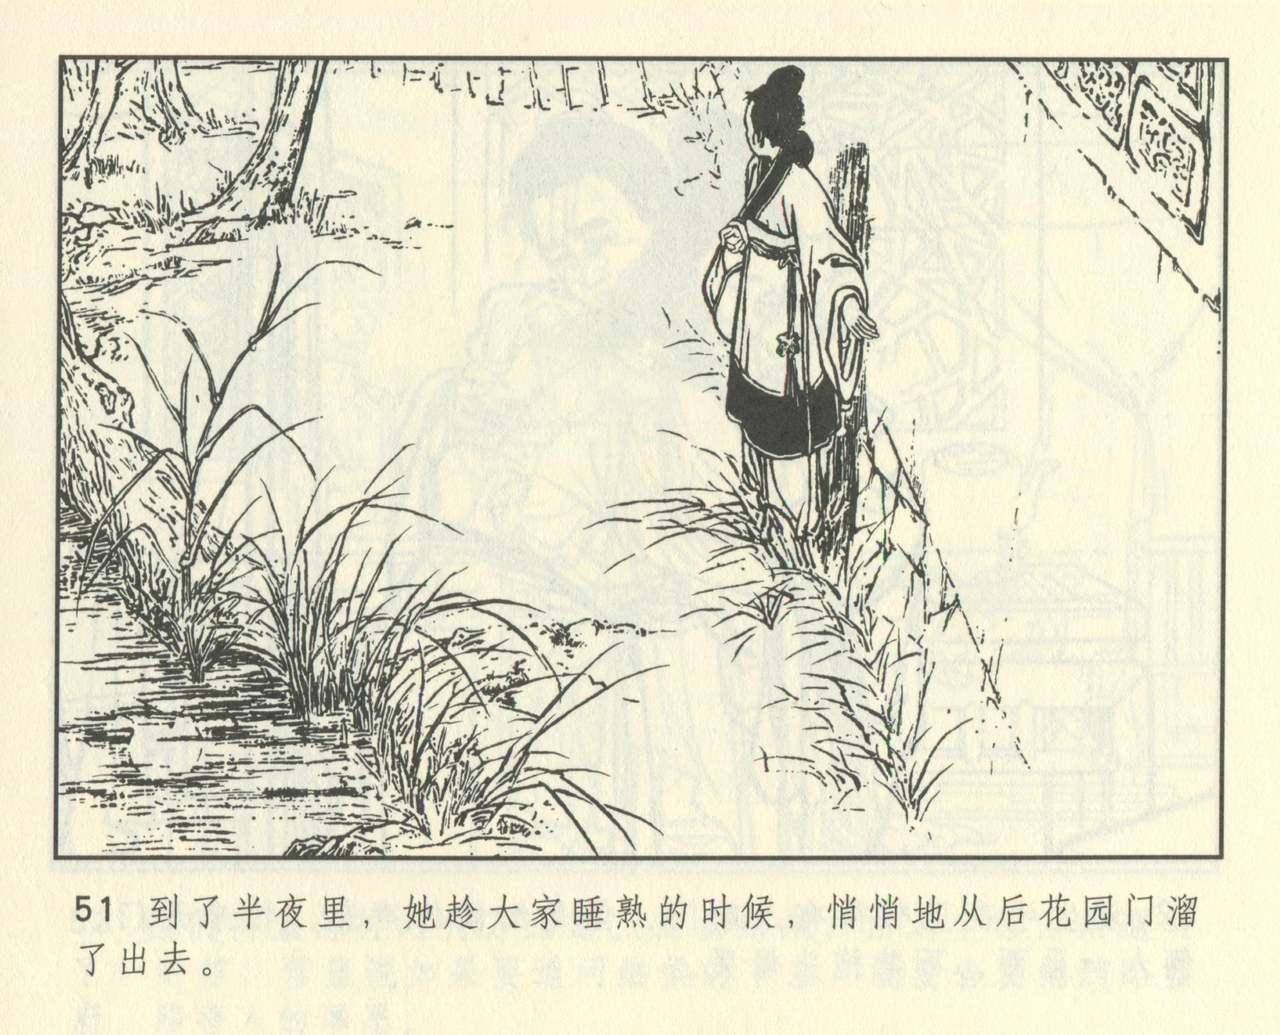 聊斋志异 张玮等绘 天津人民美术出版社 卷二十一 ~ 三十 462